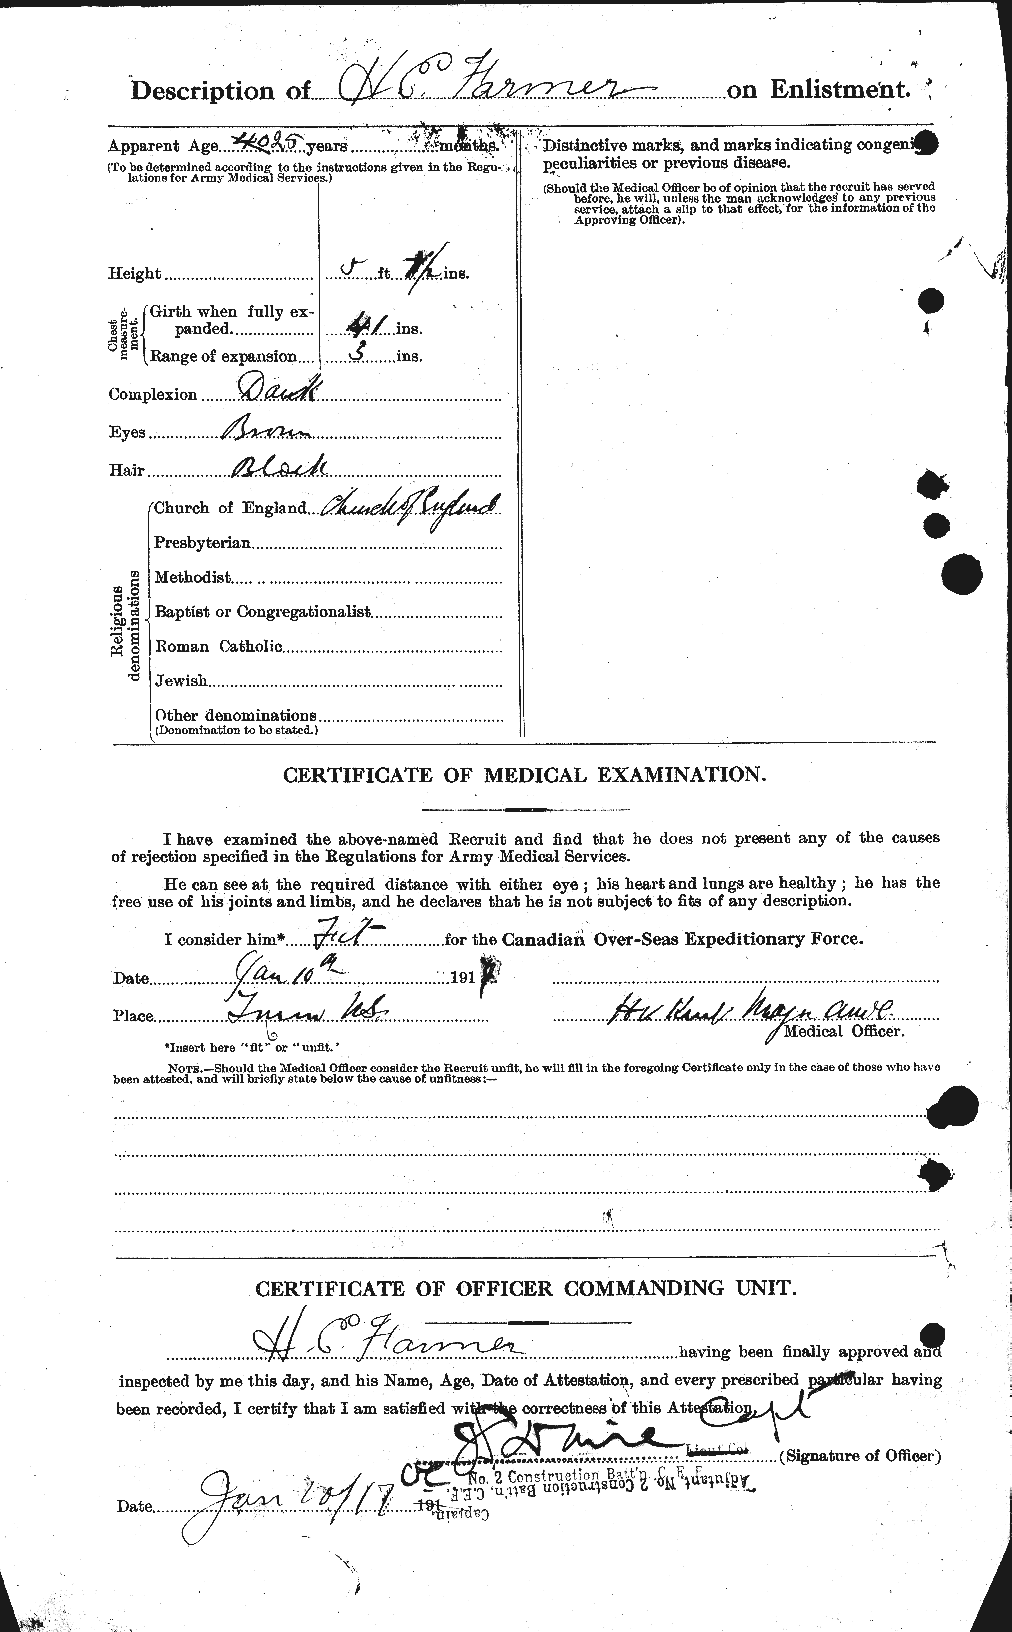 Dossiers du Personnel de la Première Guerre mondiale - CEC 317953b